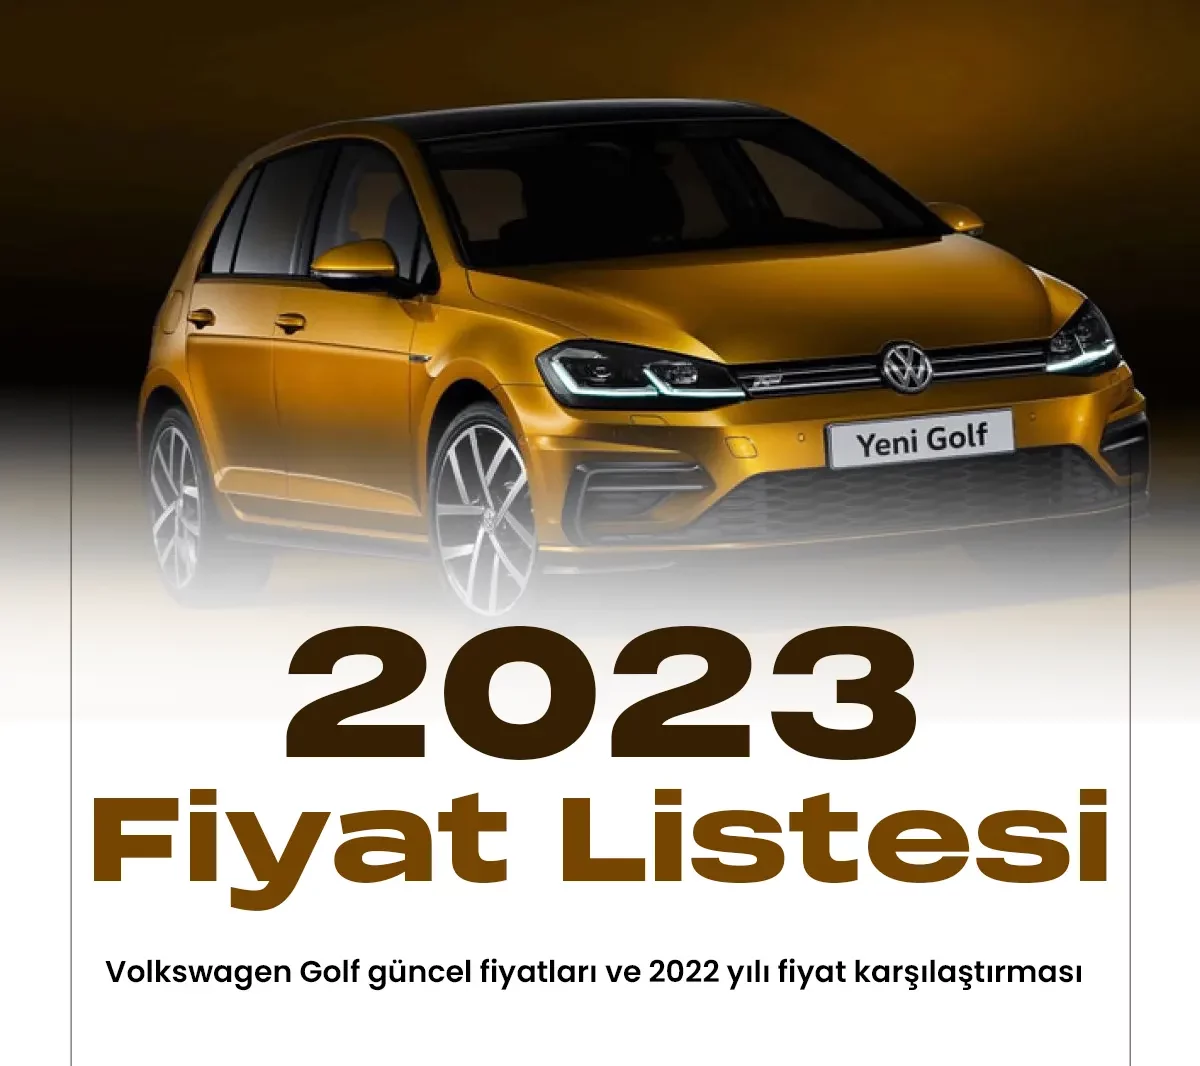 Volkswagen Golf Ocak fiyat listesi yayımlandı.